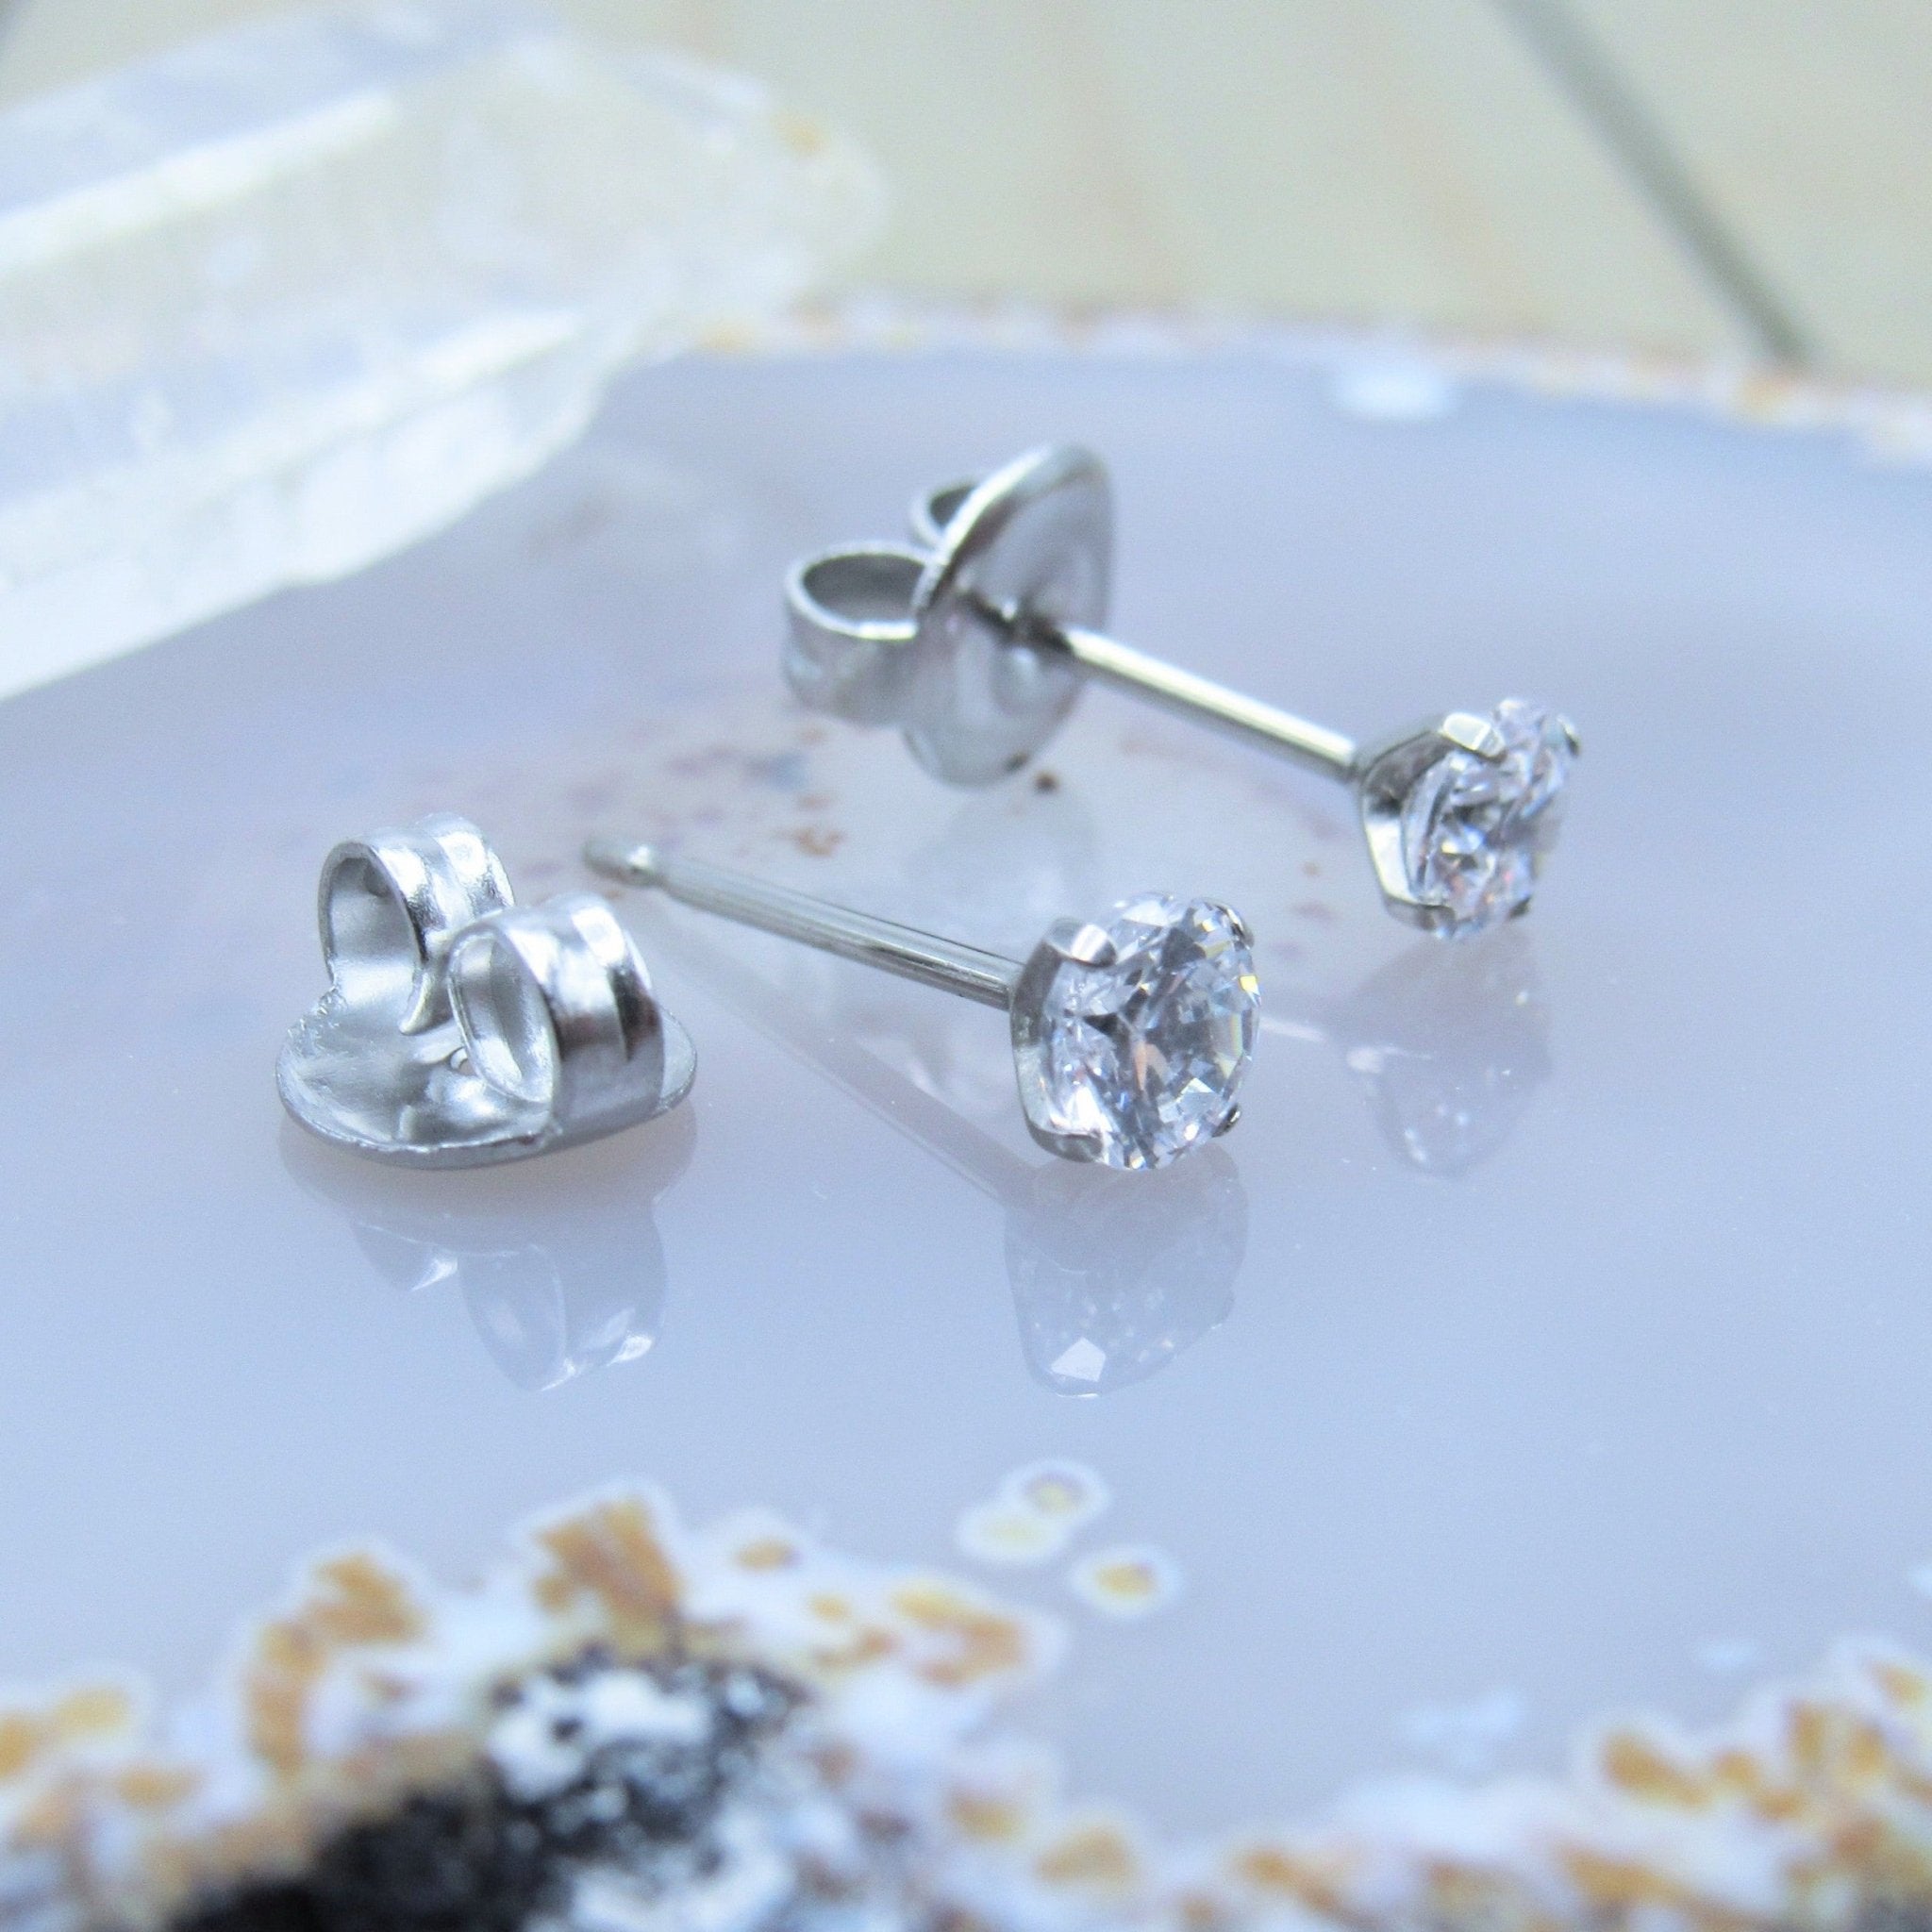 Double Piercing Diamond Stud Earrings – RW Fine Jewelry